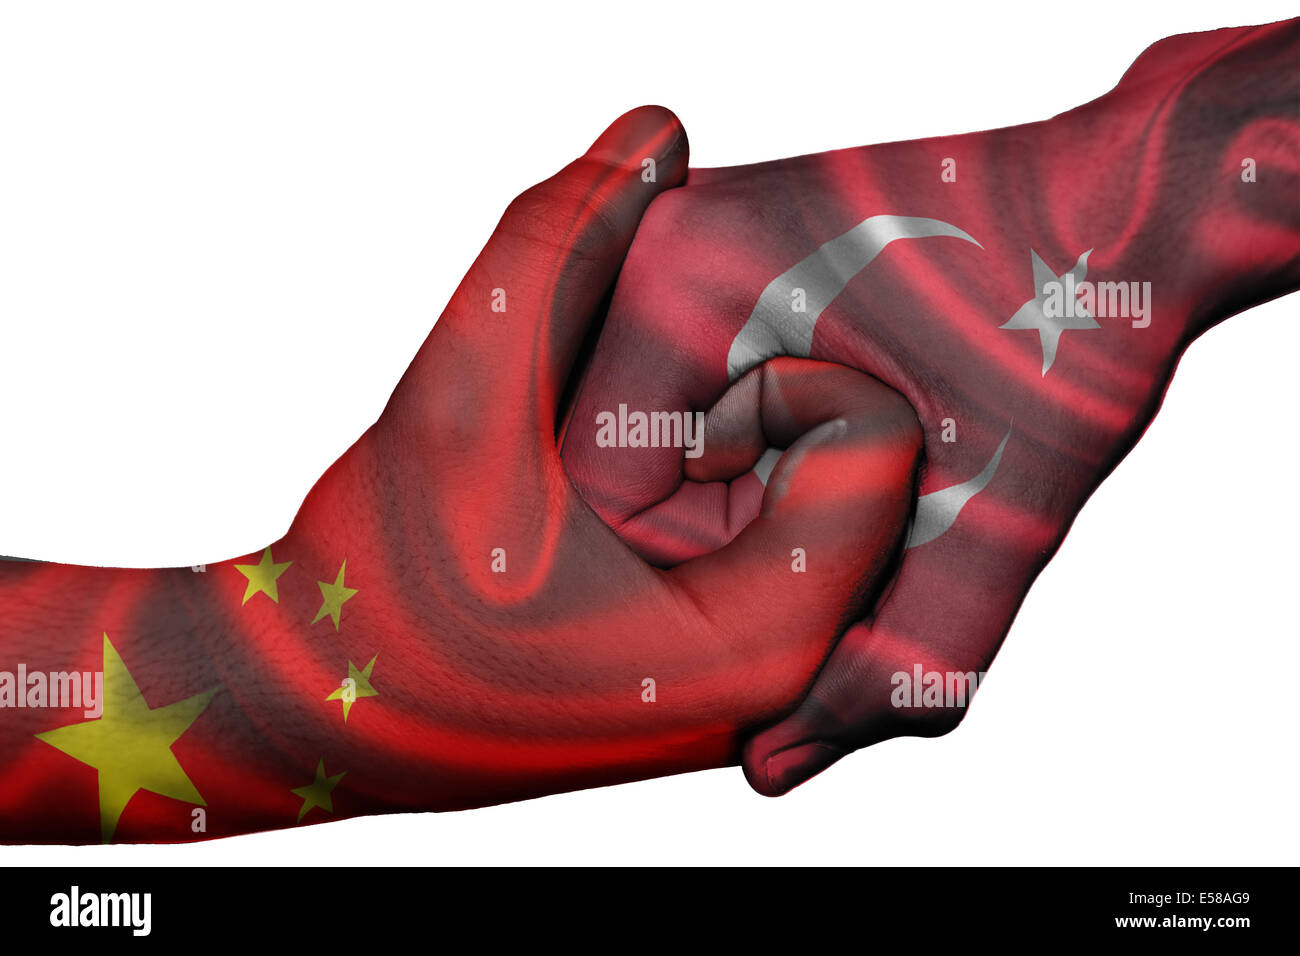 Handshake diplomatiche tra paesi: bandiere di Cina e Turchia sovradipinta le due mani Foto Stock